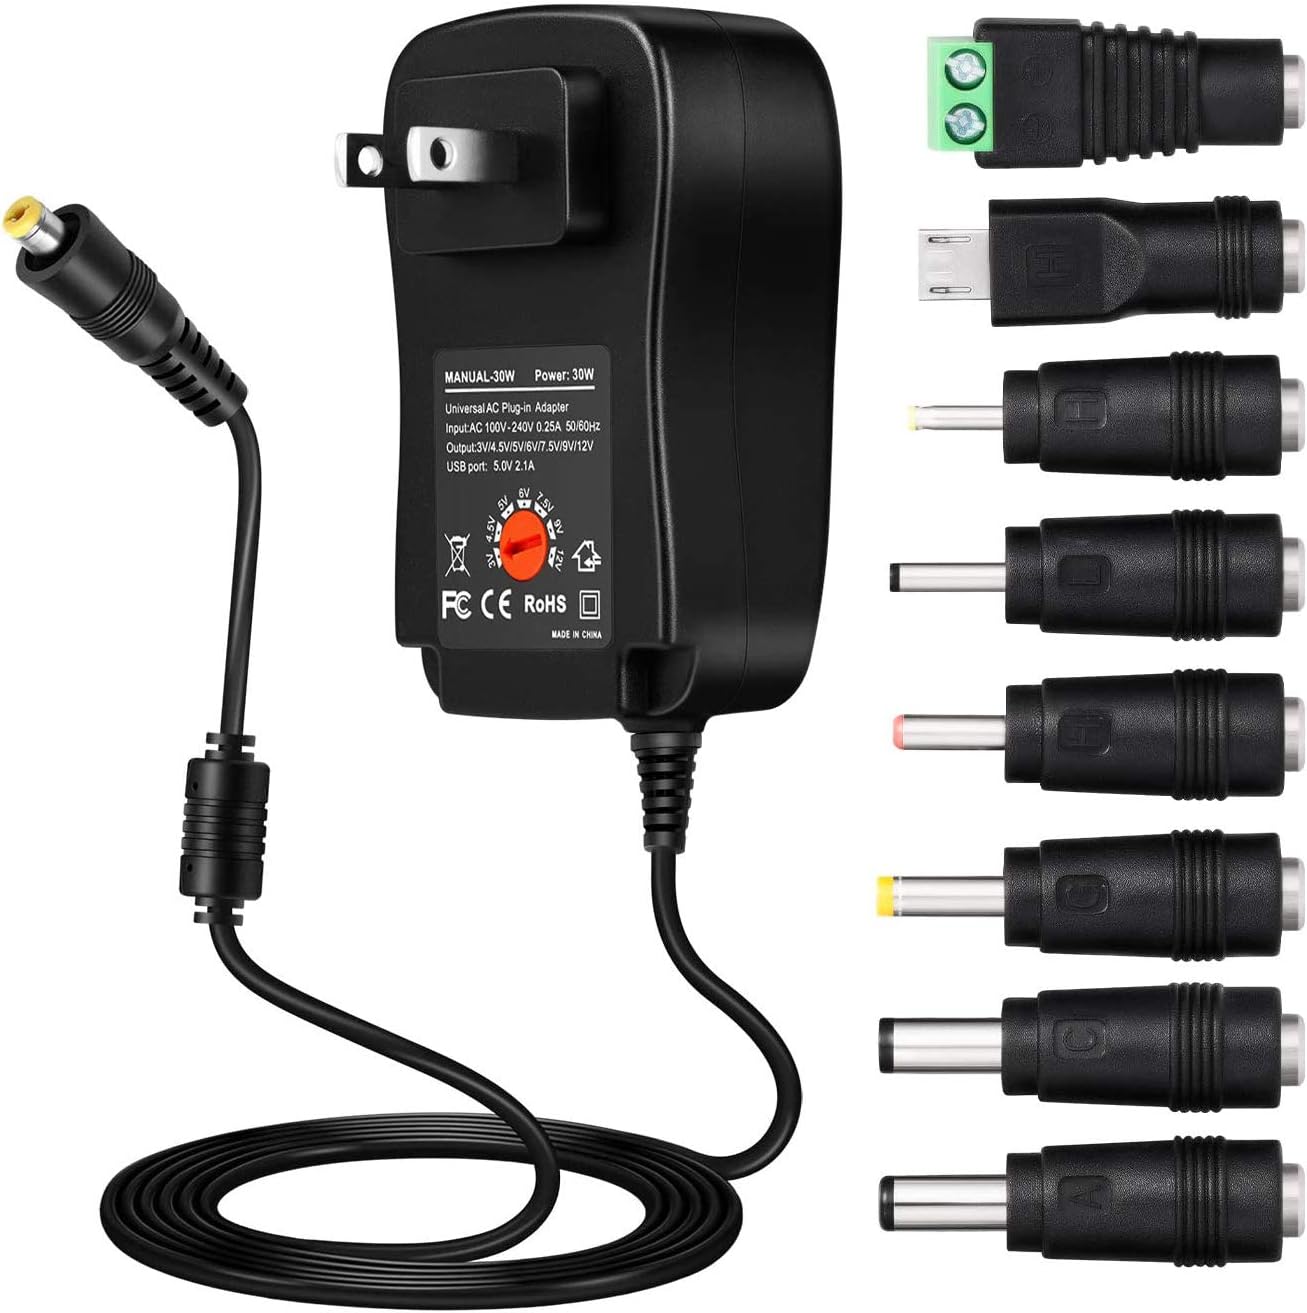 3V 4.5V 5V 6V 7.5V 9V/12V AC To DC Adjustable Multi-voltage Powers Adapter New 